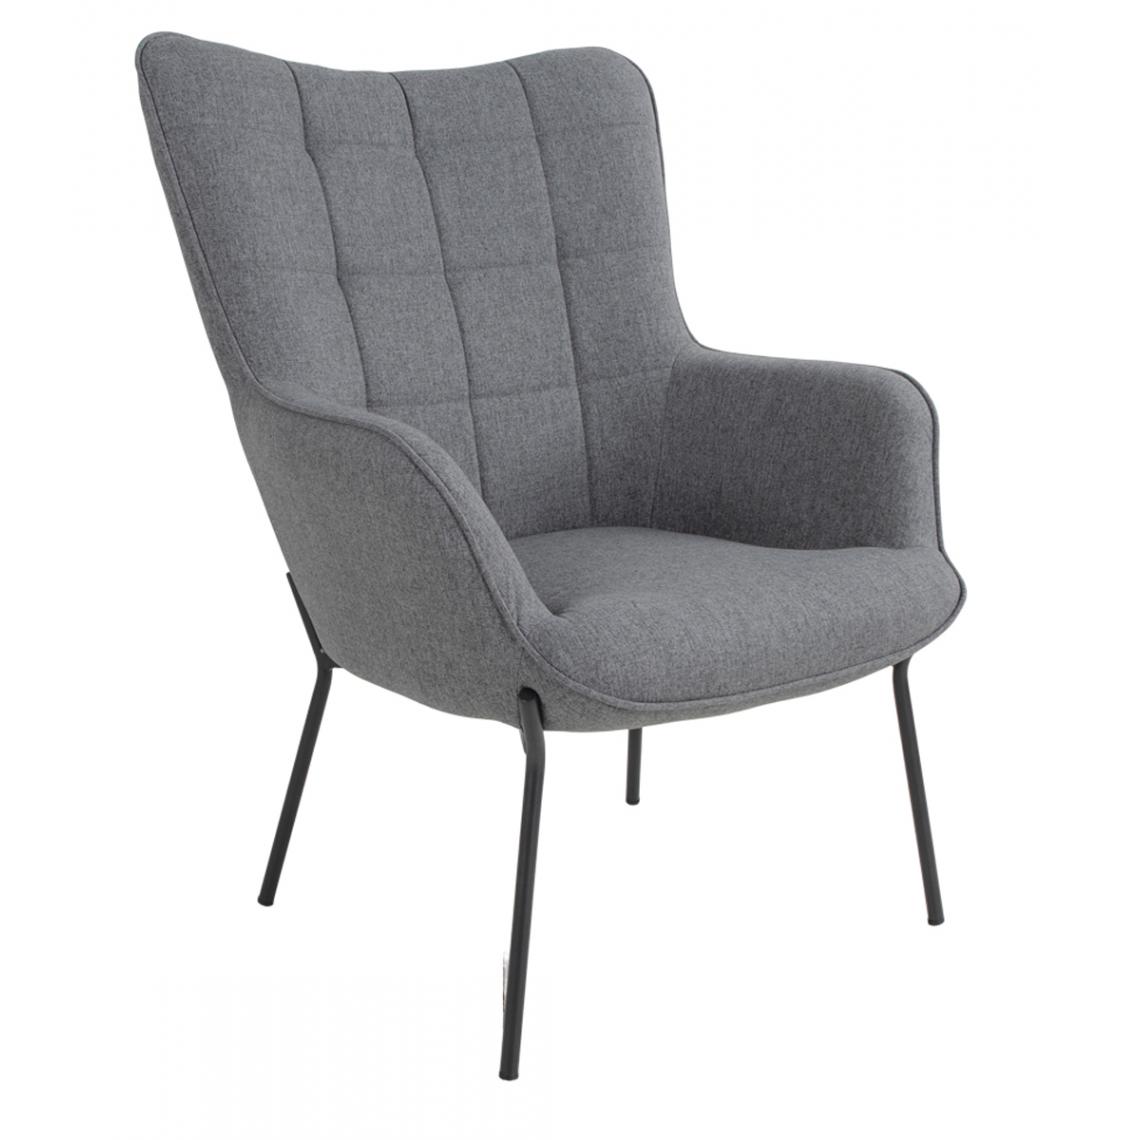 Pegane - Chaise coloris gris en polyester - 79 x 70 x 98 cm - Chaises